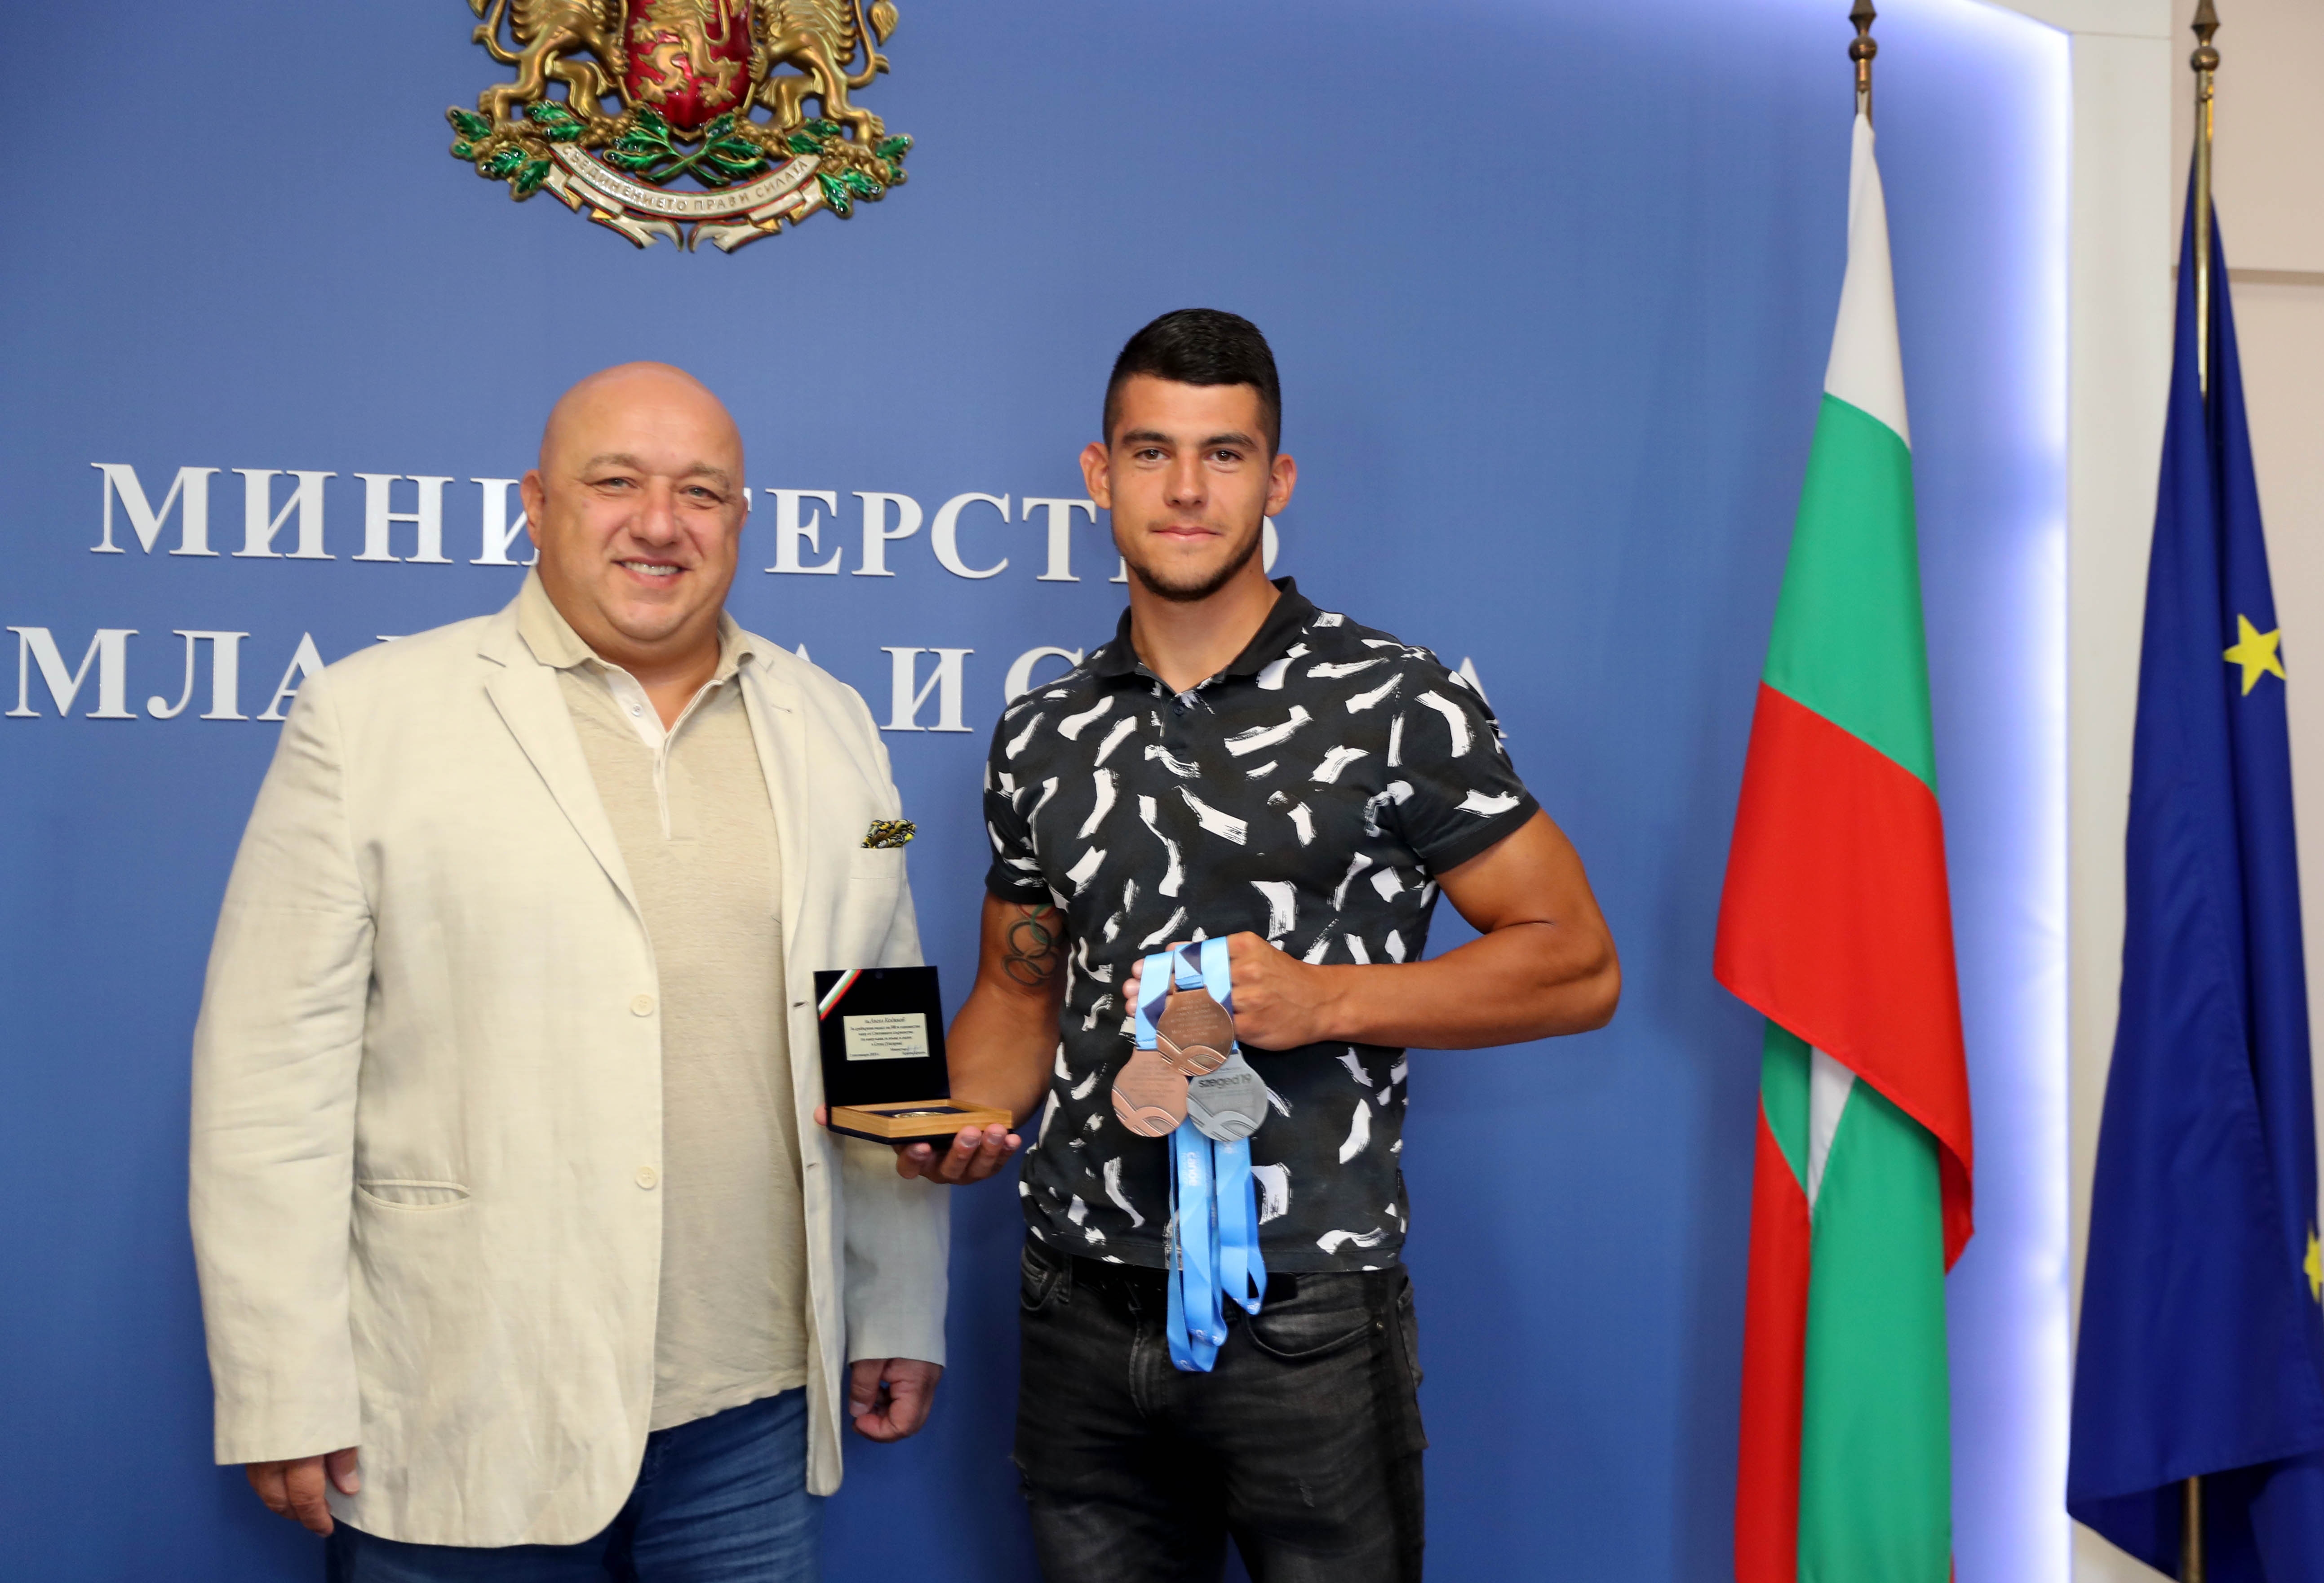 Министърът на младежта и спорта Красен Кралев награди с почетен